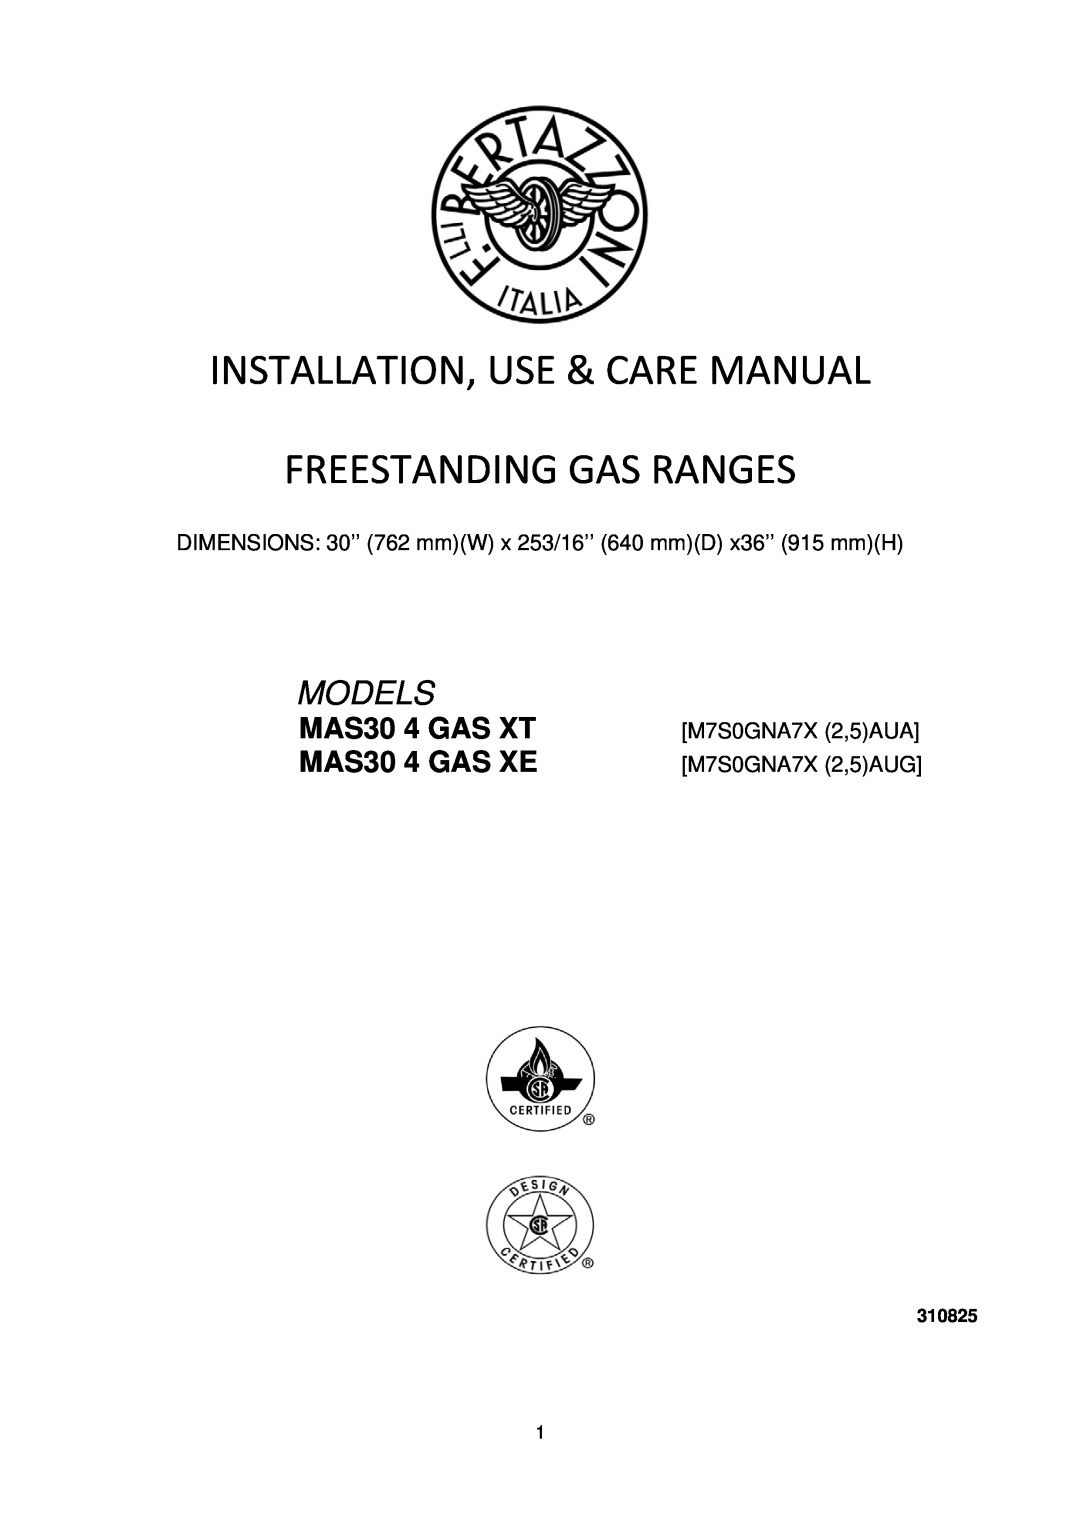 Bertazzoni manual MAS30 4 GAS XT MAS30 4 GAS XE, DIMENSIONS 30’’ 762 mmW x 253/16’’ 640 mmD x36’’ 915 mmH, Models 